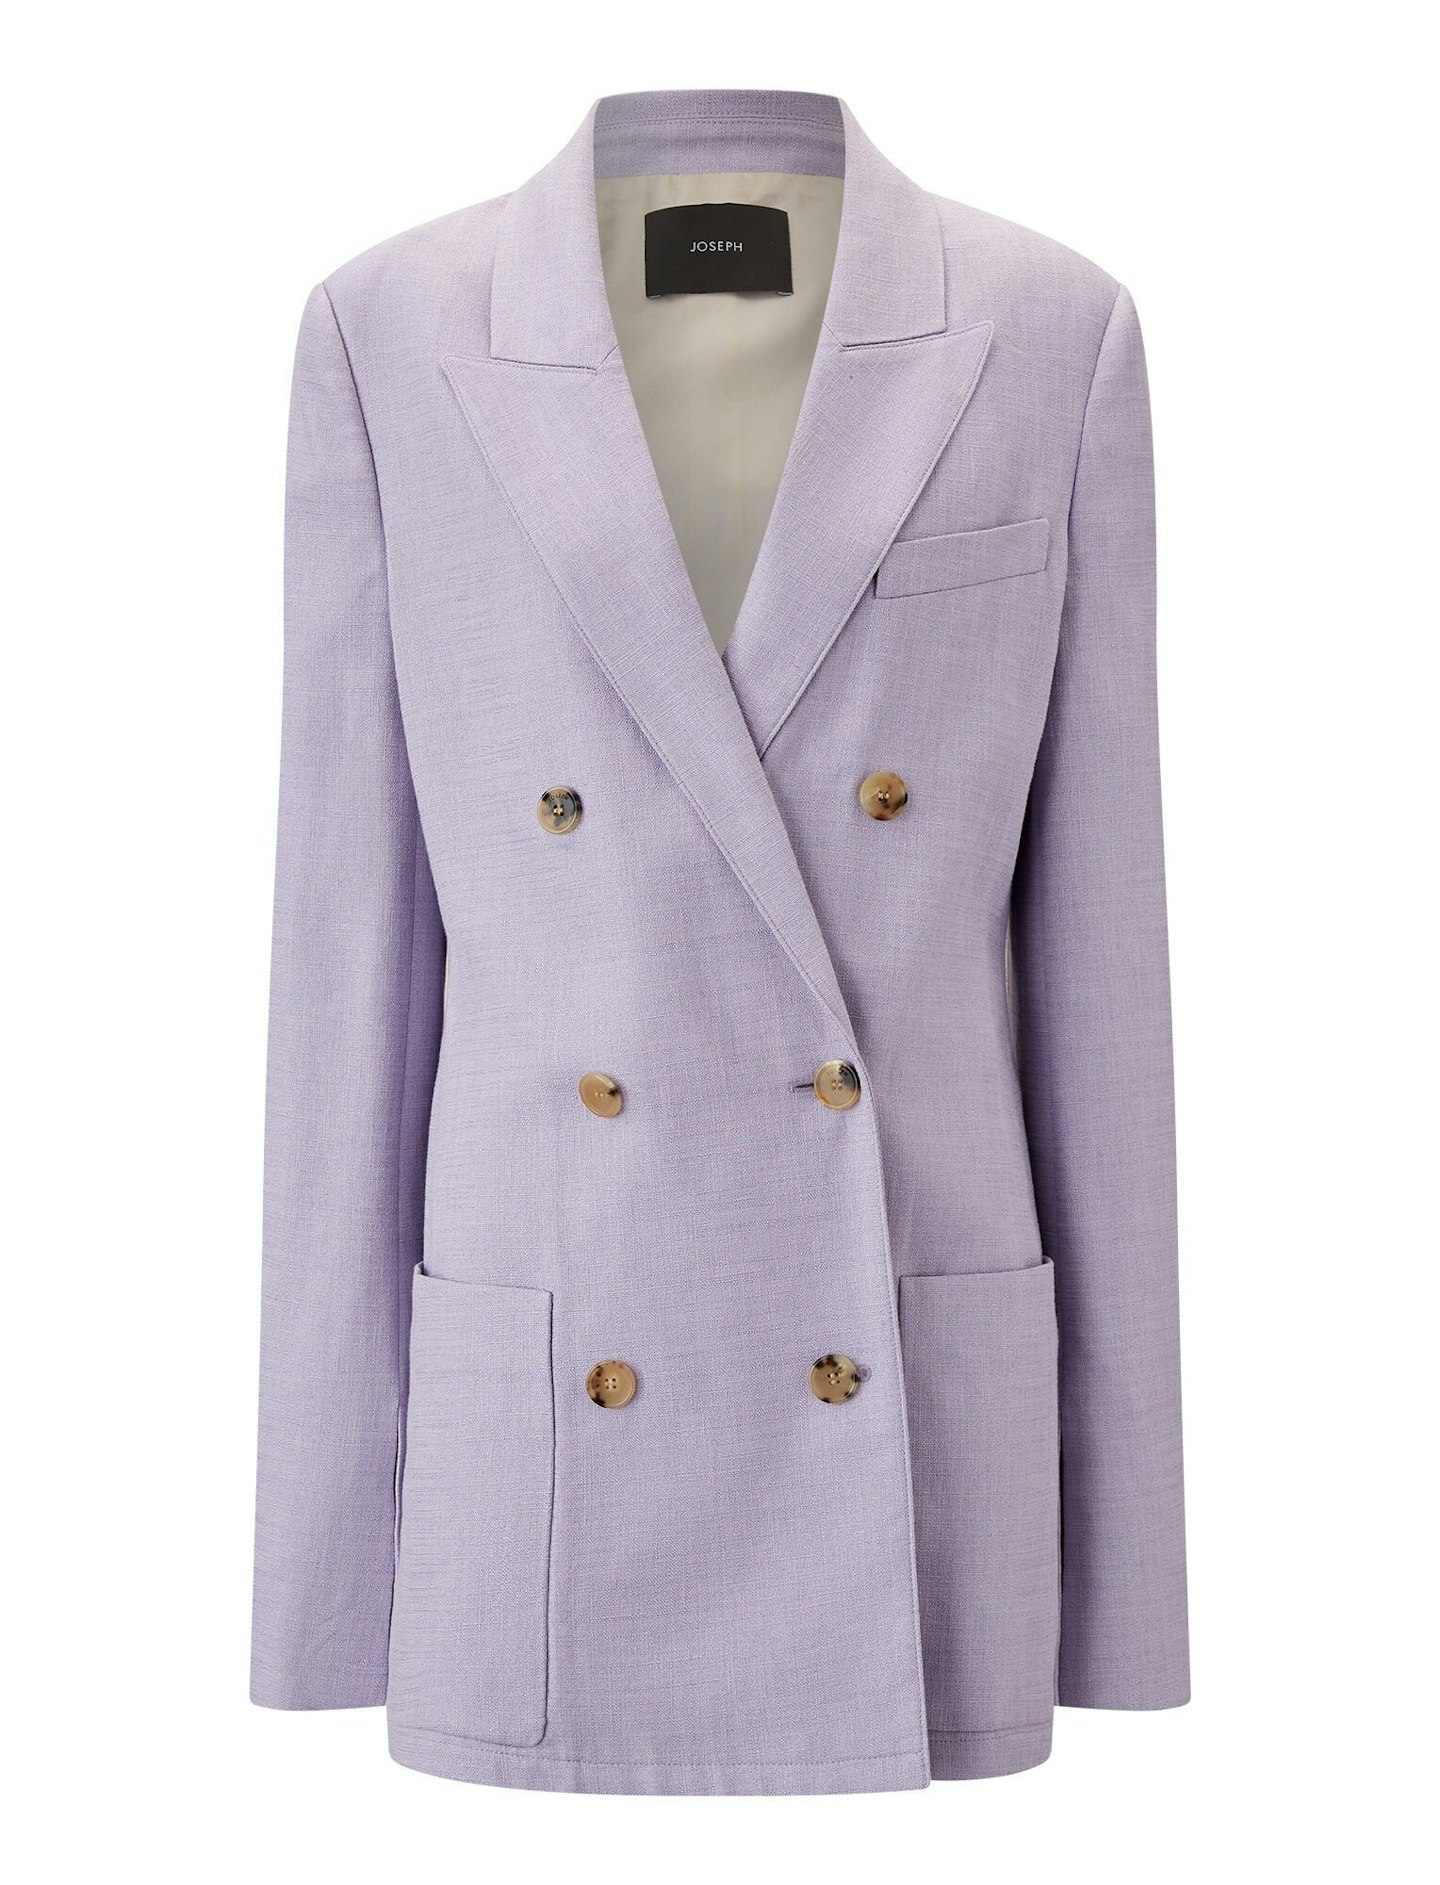 Joseph, Suit Jacket, £575